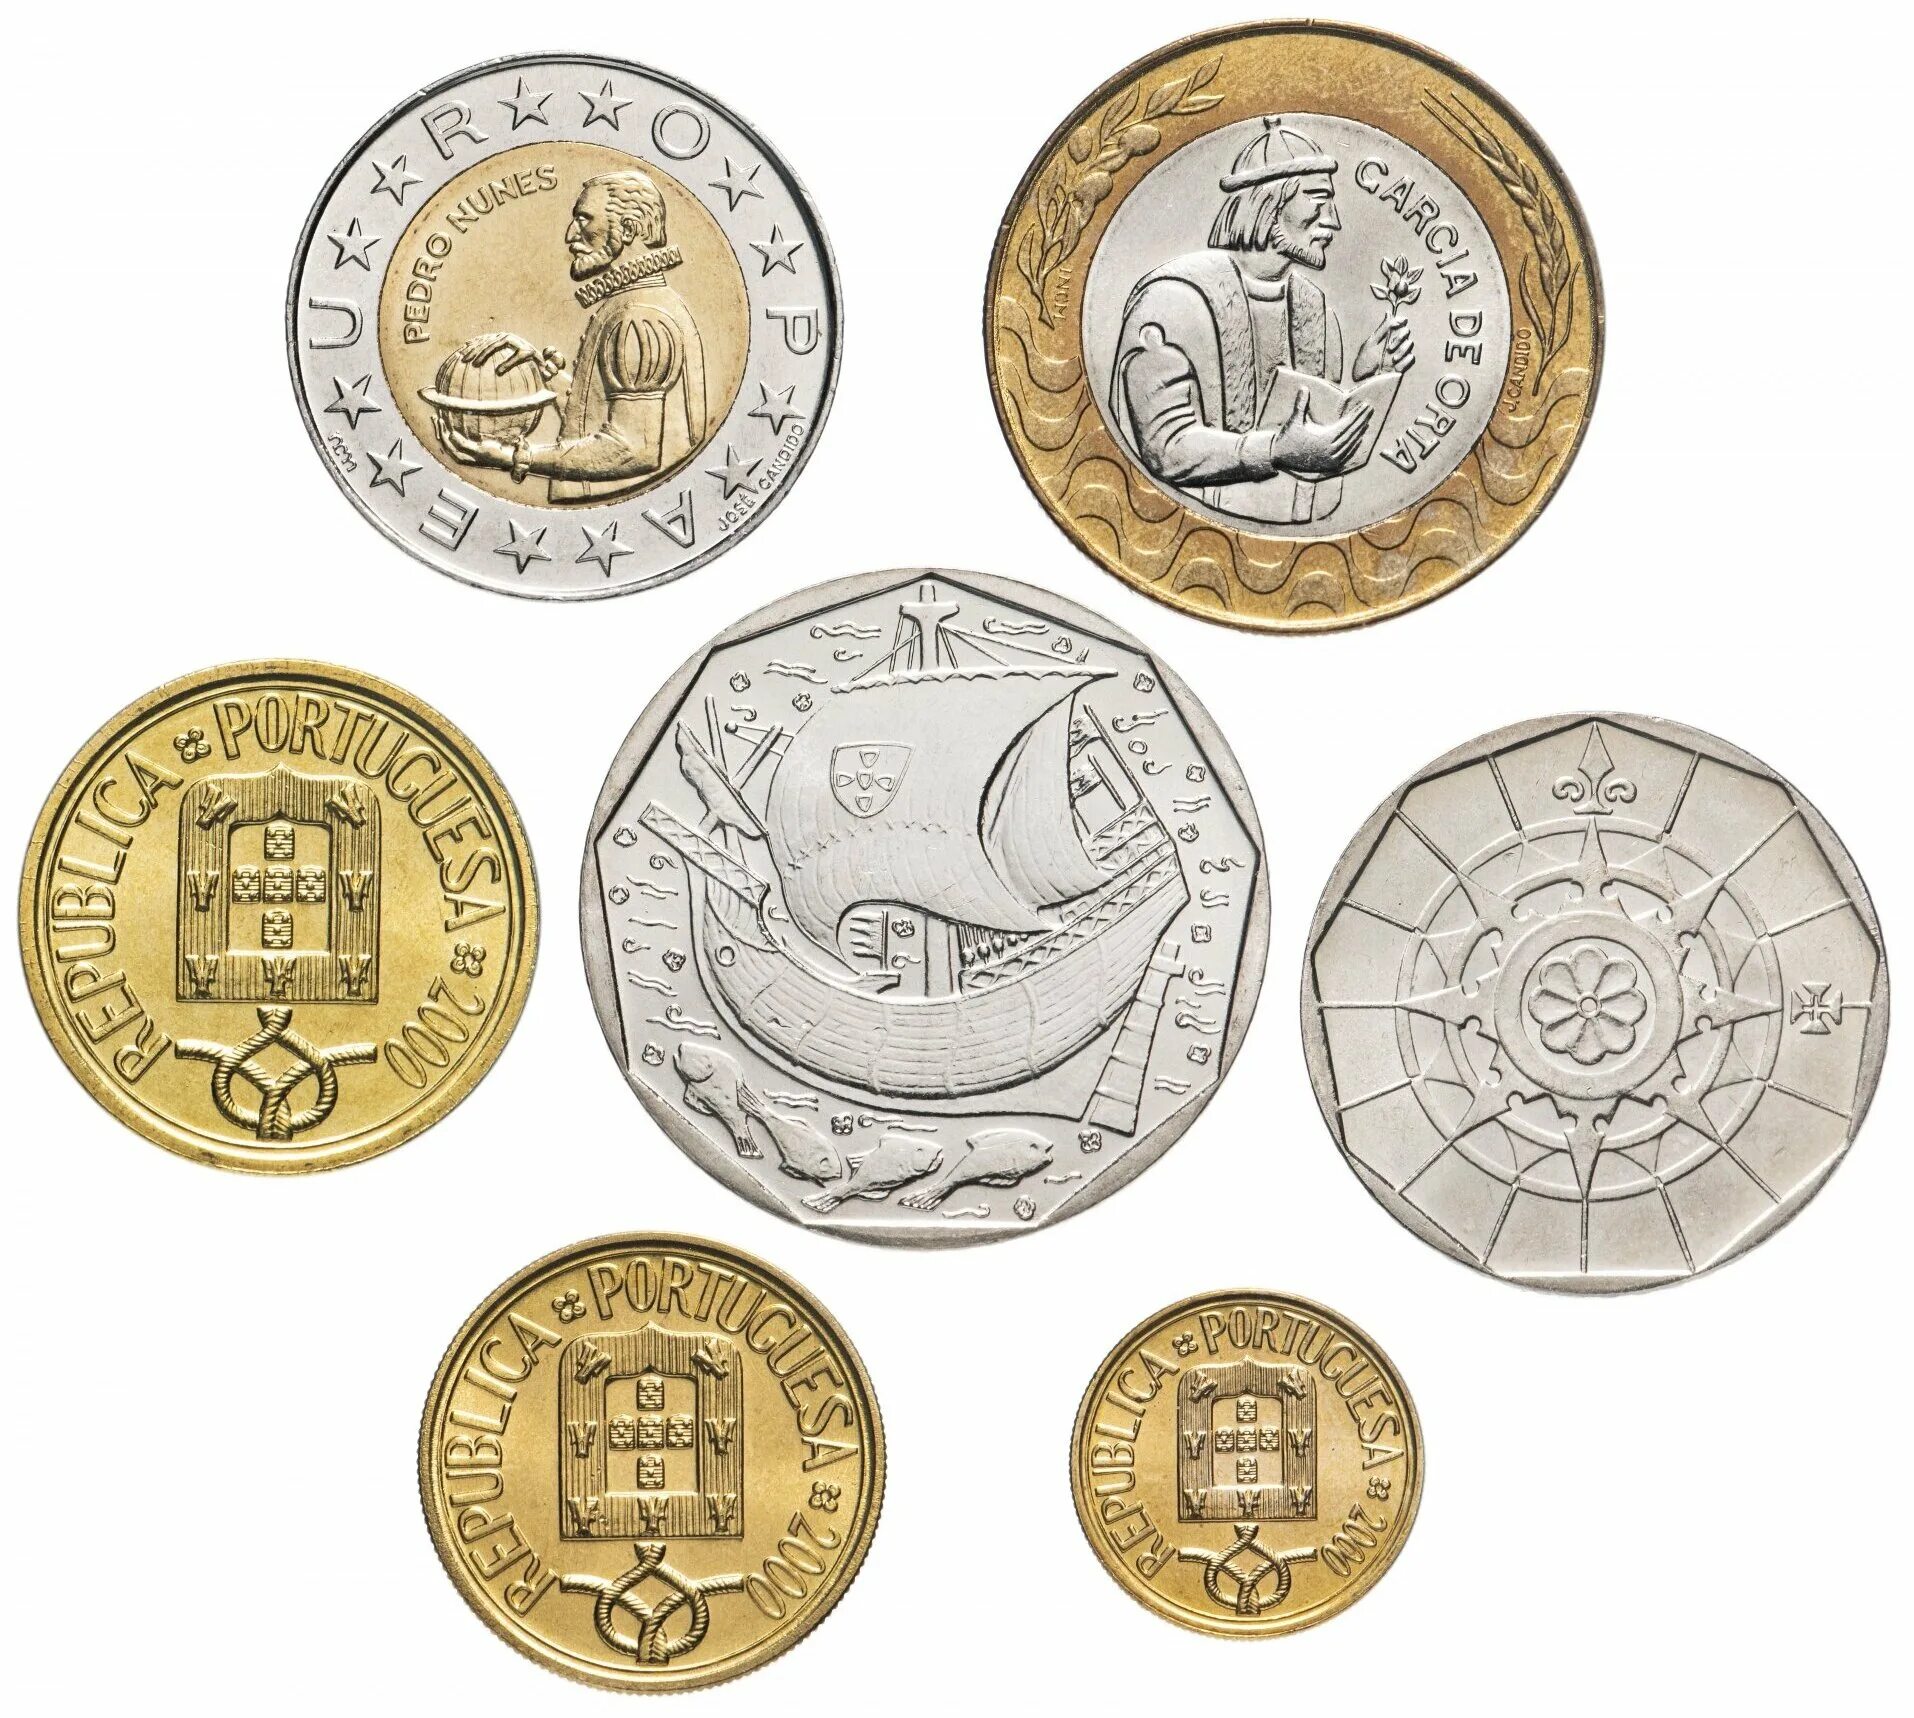 Монеты Португалии 100 эскудо. Набор монет "7 сокровищ древних цивилизаций". Португалия5s00монета. Эскудо валюта Португалии монеты.